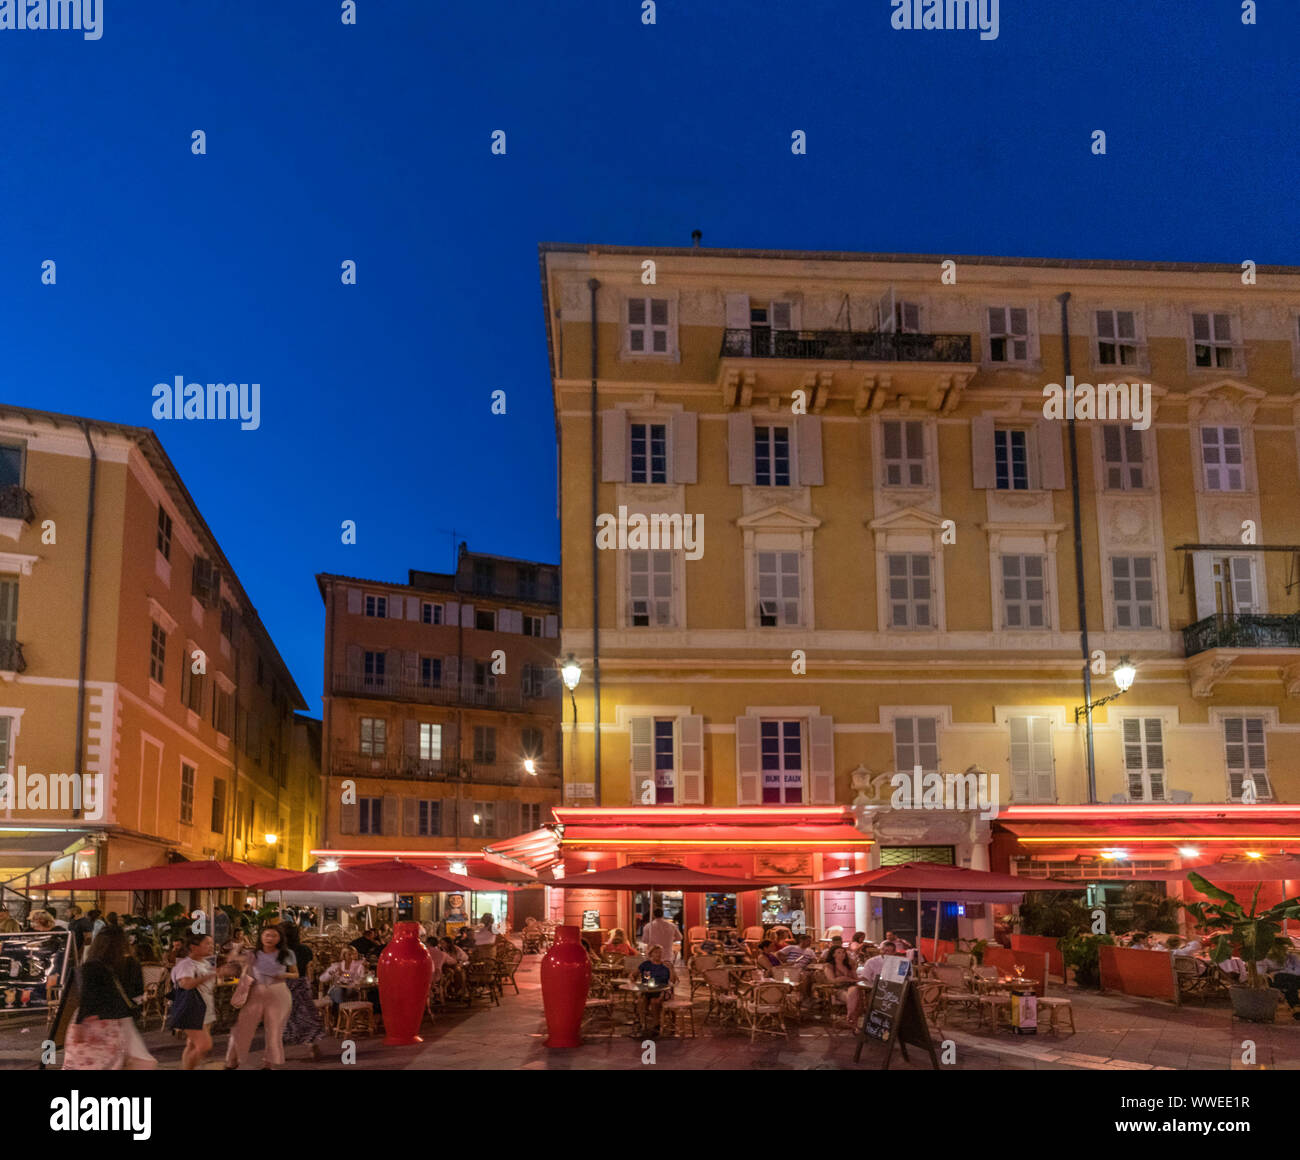 Restaurants am Abend, de Cours Saleya, Nizza, Côte d'Azur, Frankreich Stockfoto